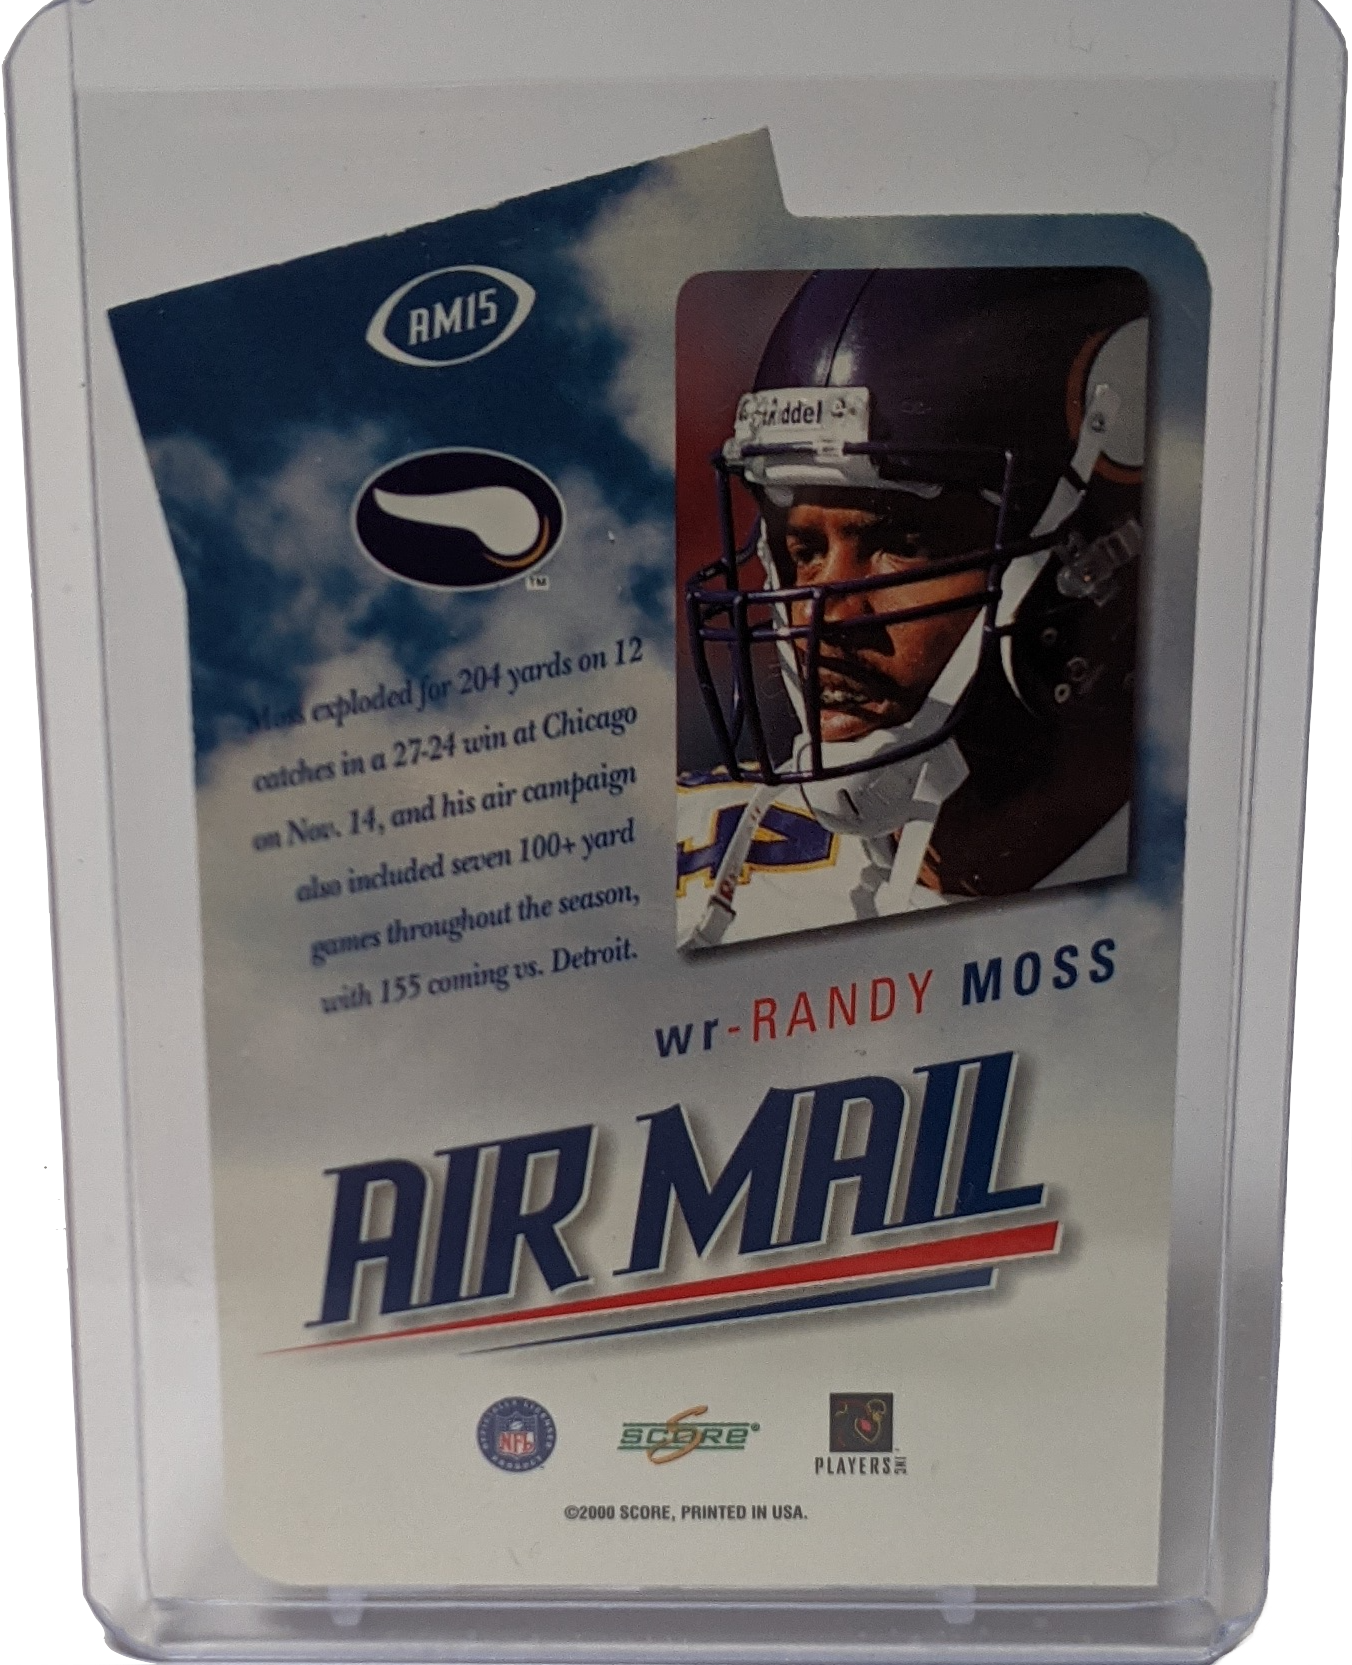 2000 Score Randy Moss Air Mail Insert